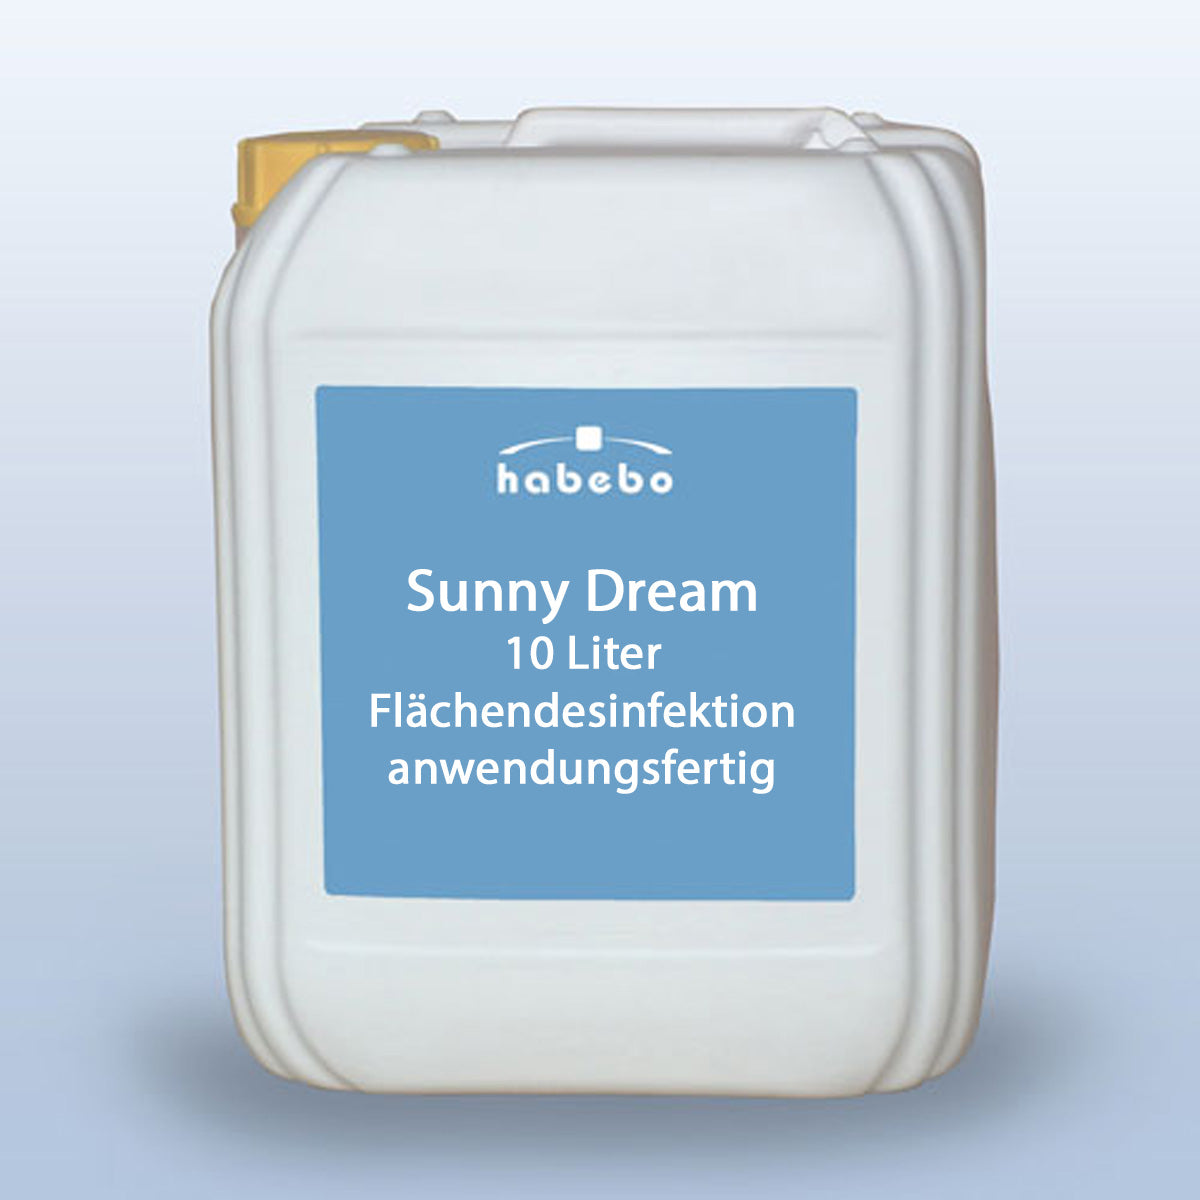 Sunny-Dream-Flaechendesinfektion-10Liter